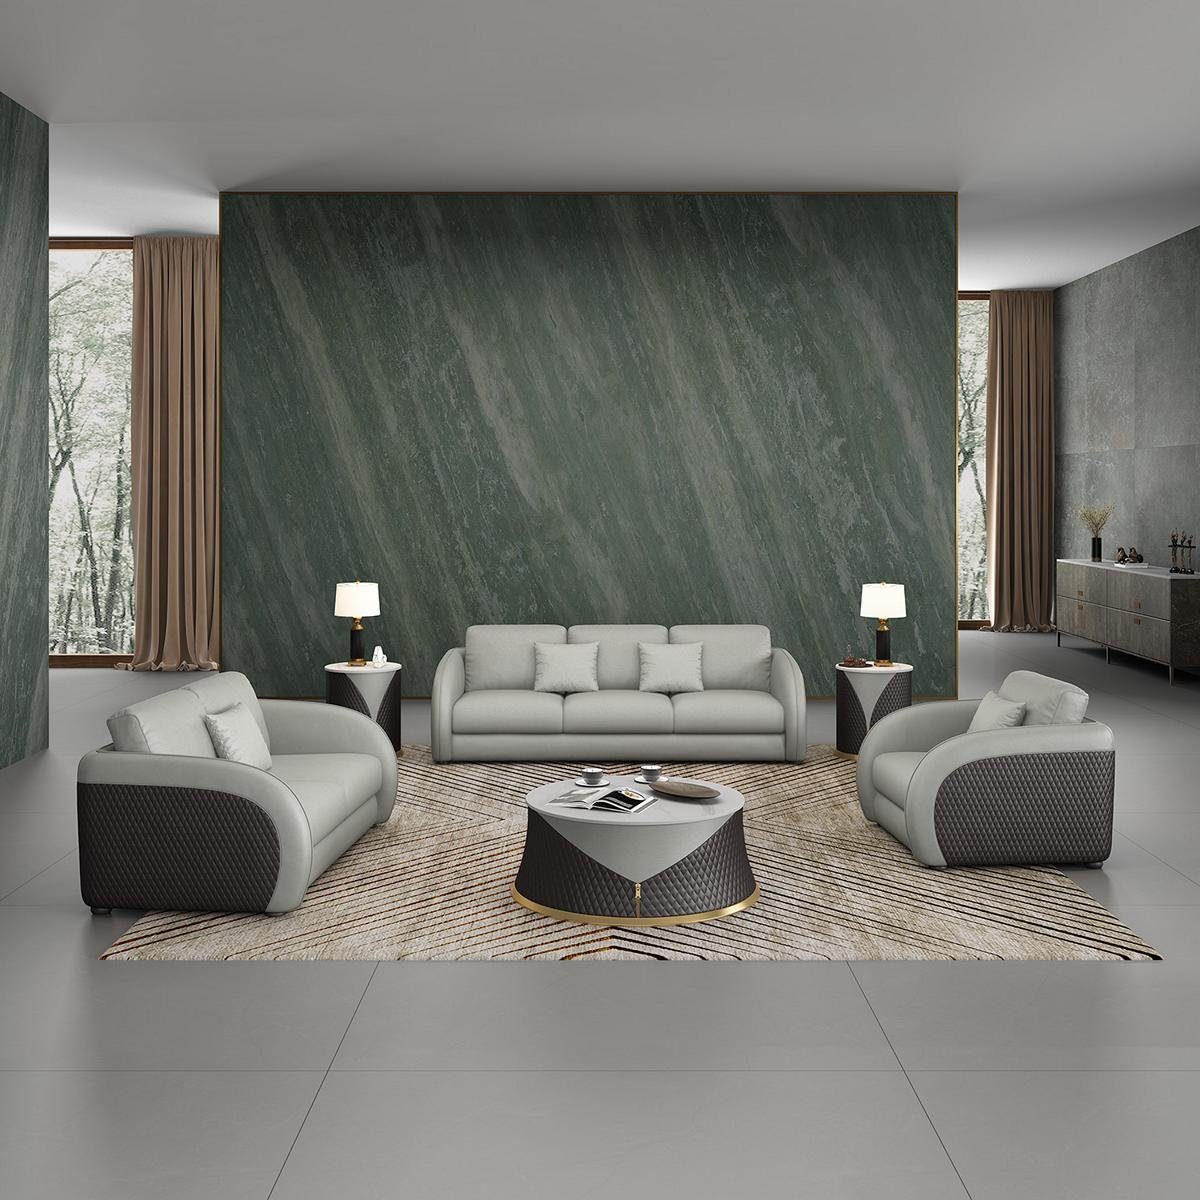 JVmoebel Wohnzimmer-Set, Sofagarnitur 3 2 1 Sitzer Set Design Sofa Polster Couchen Couch Weiß/Silber